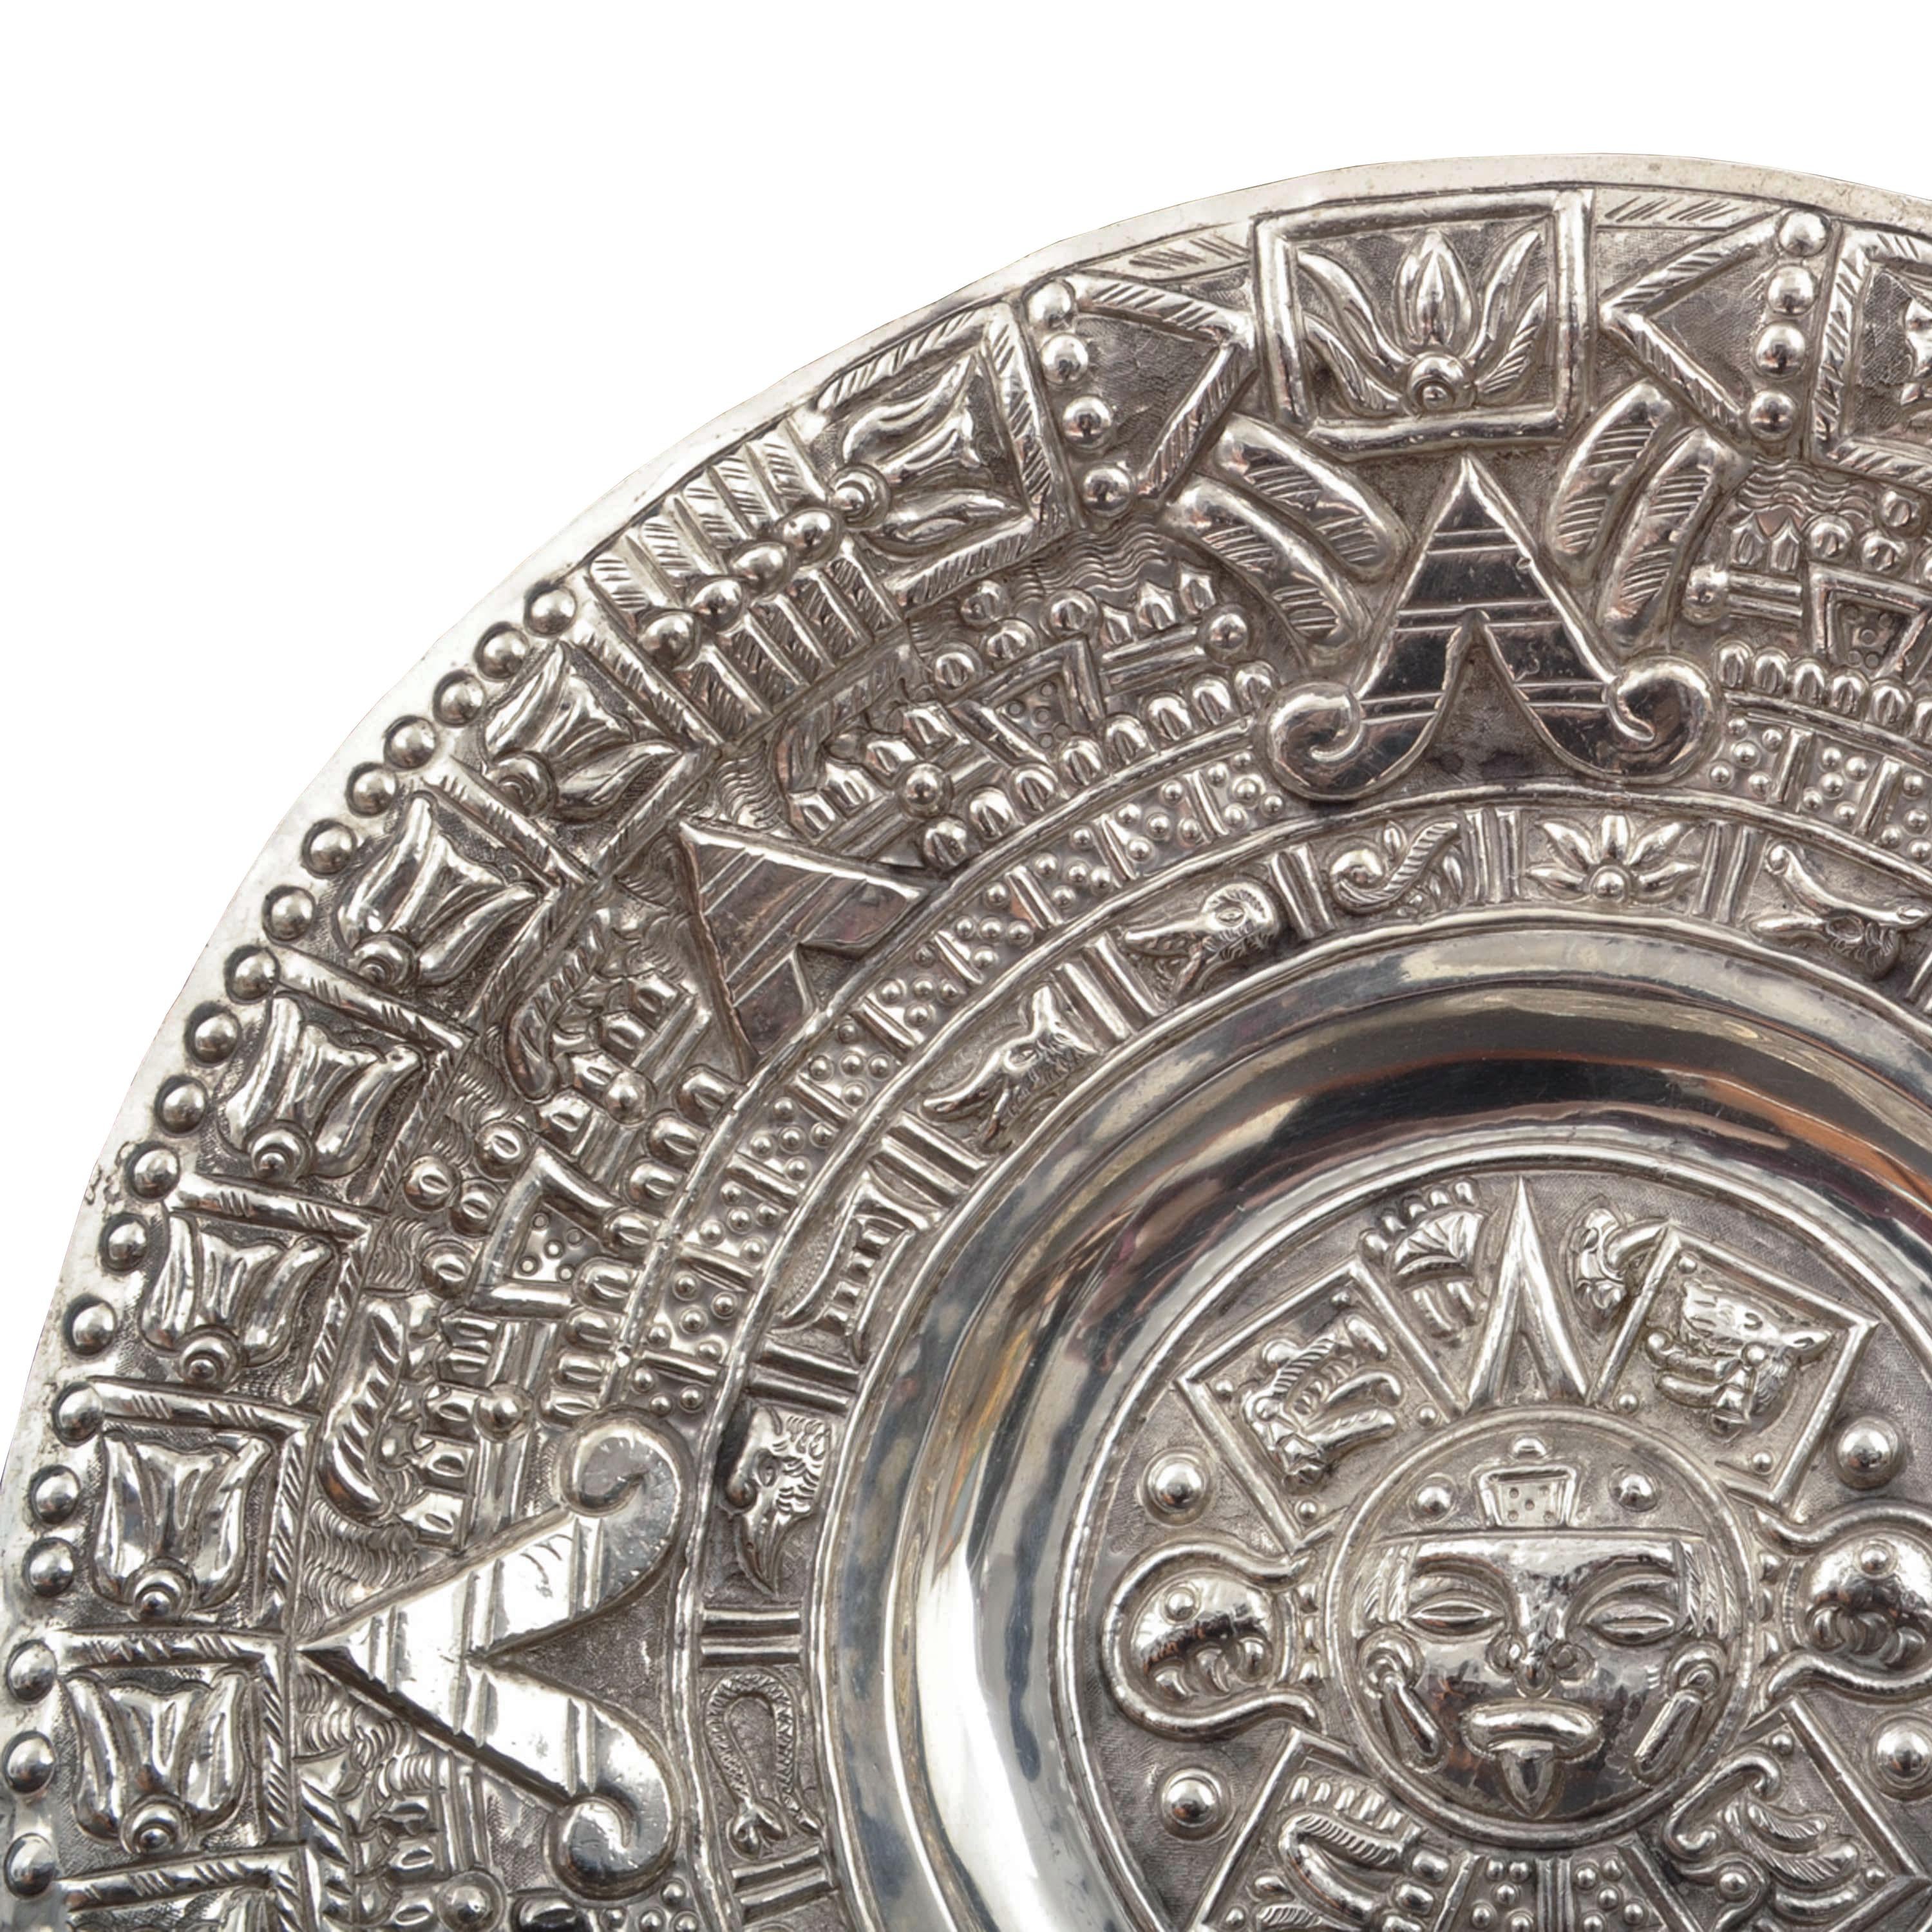 Eine gute, große, Mid-Century Modern Mexican Sterling Silber (wahrscheinlich Taxco) Aztec Kalender Wand Ladegerät, 1960er Jahre.
Das Ladegerät von großer Größe und mit einem Gewicht von über 14 oz (397 Gramm) von Sterling Silber, die Darstellung der